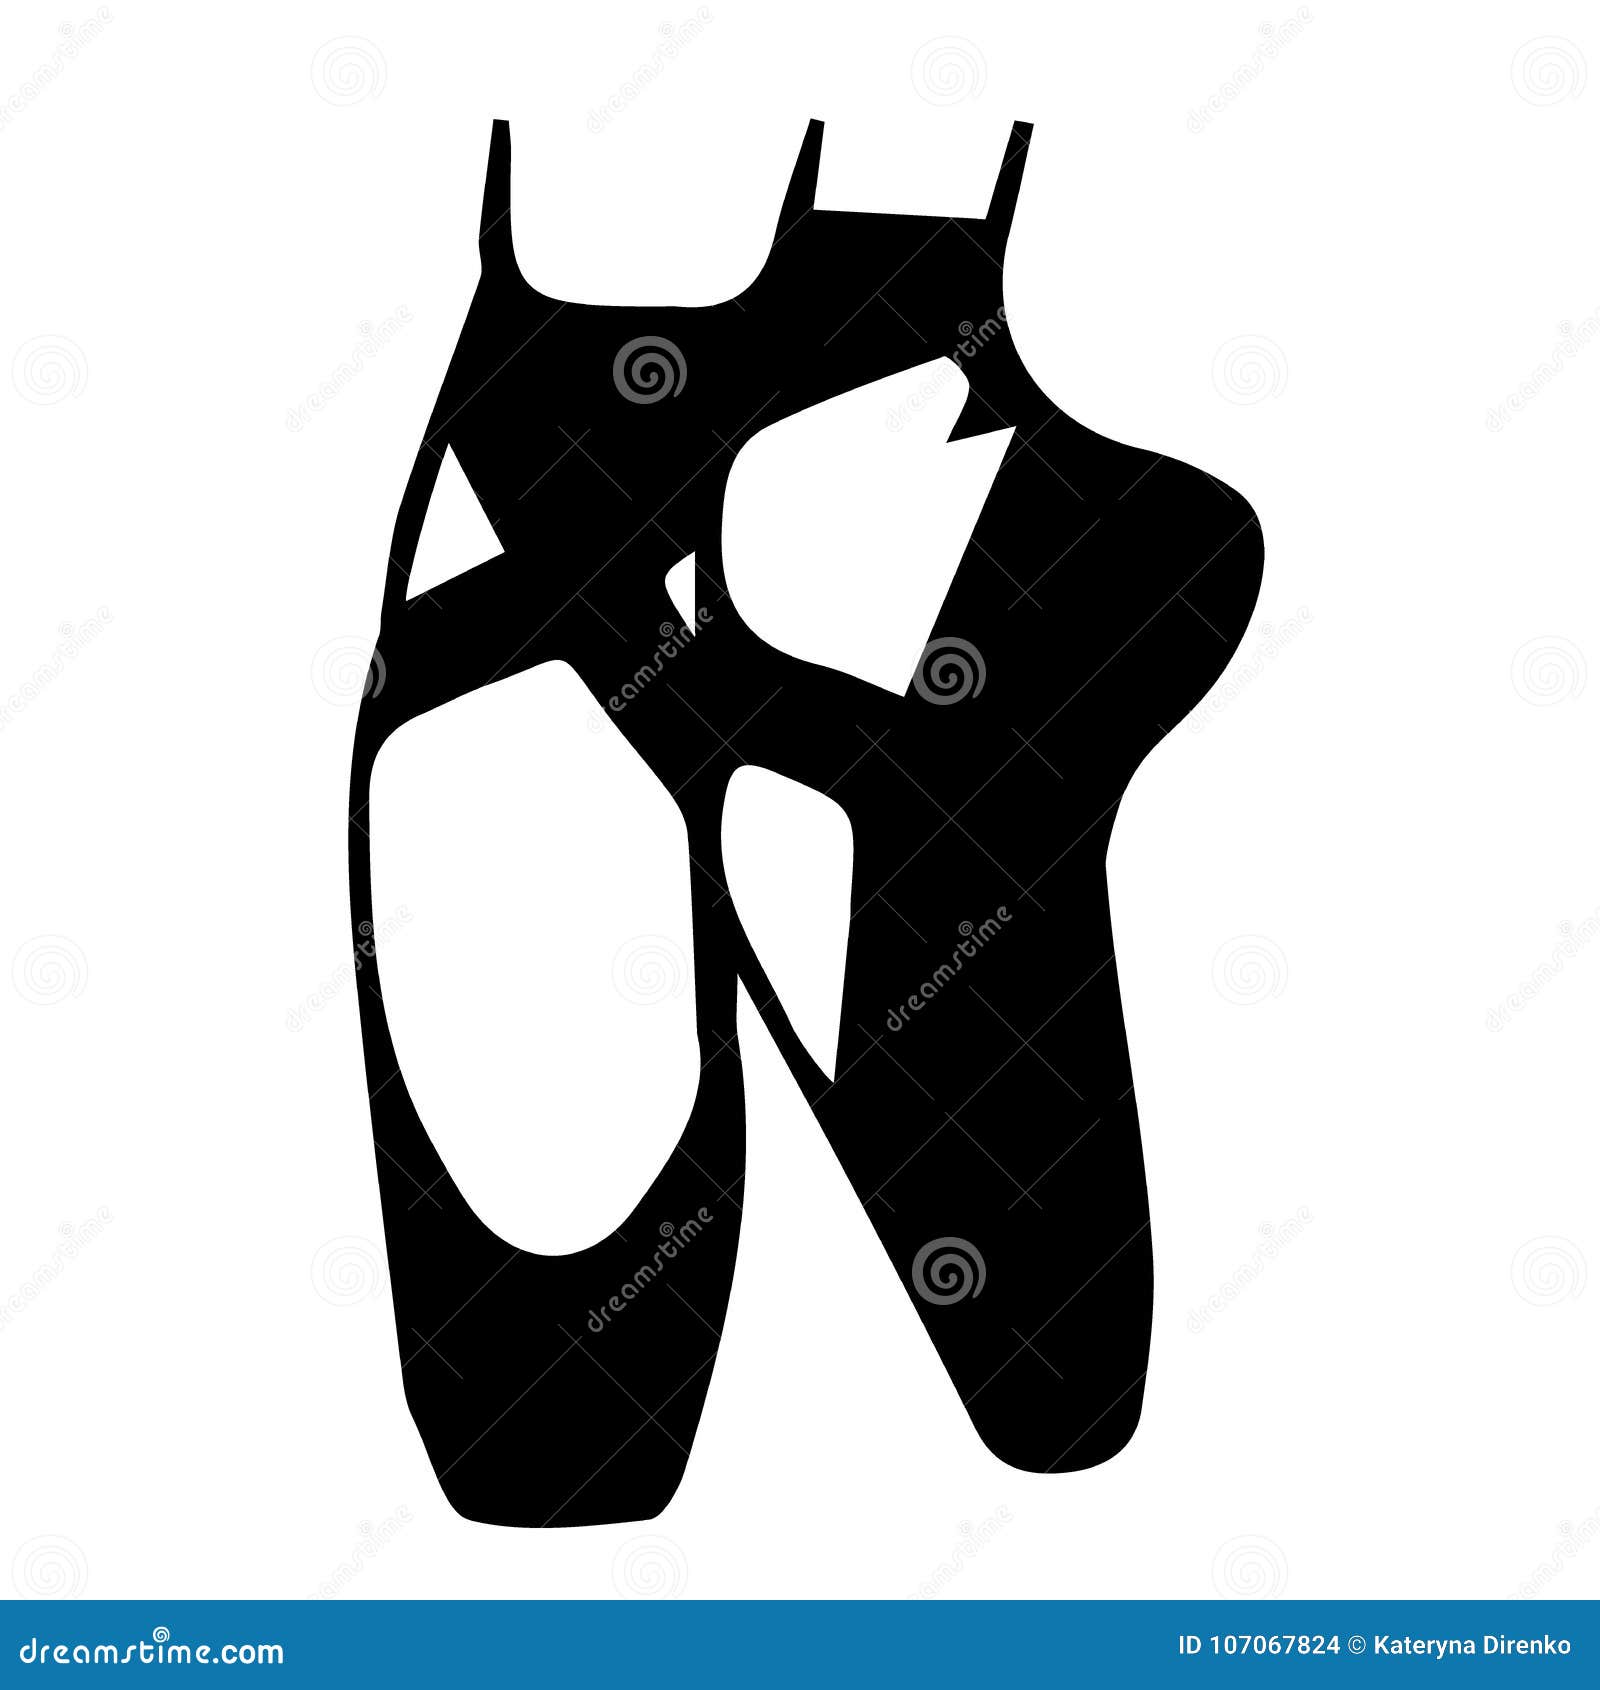 Zapatos Ballet Silueta Una Mujer Rendimiento Gracia Primer Plano:  fotografía de stock © YAY_Images #618497478